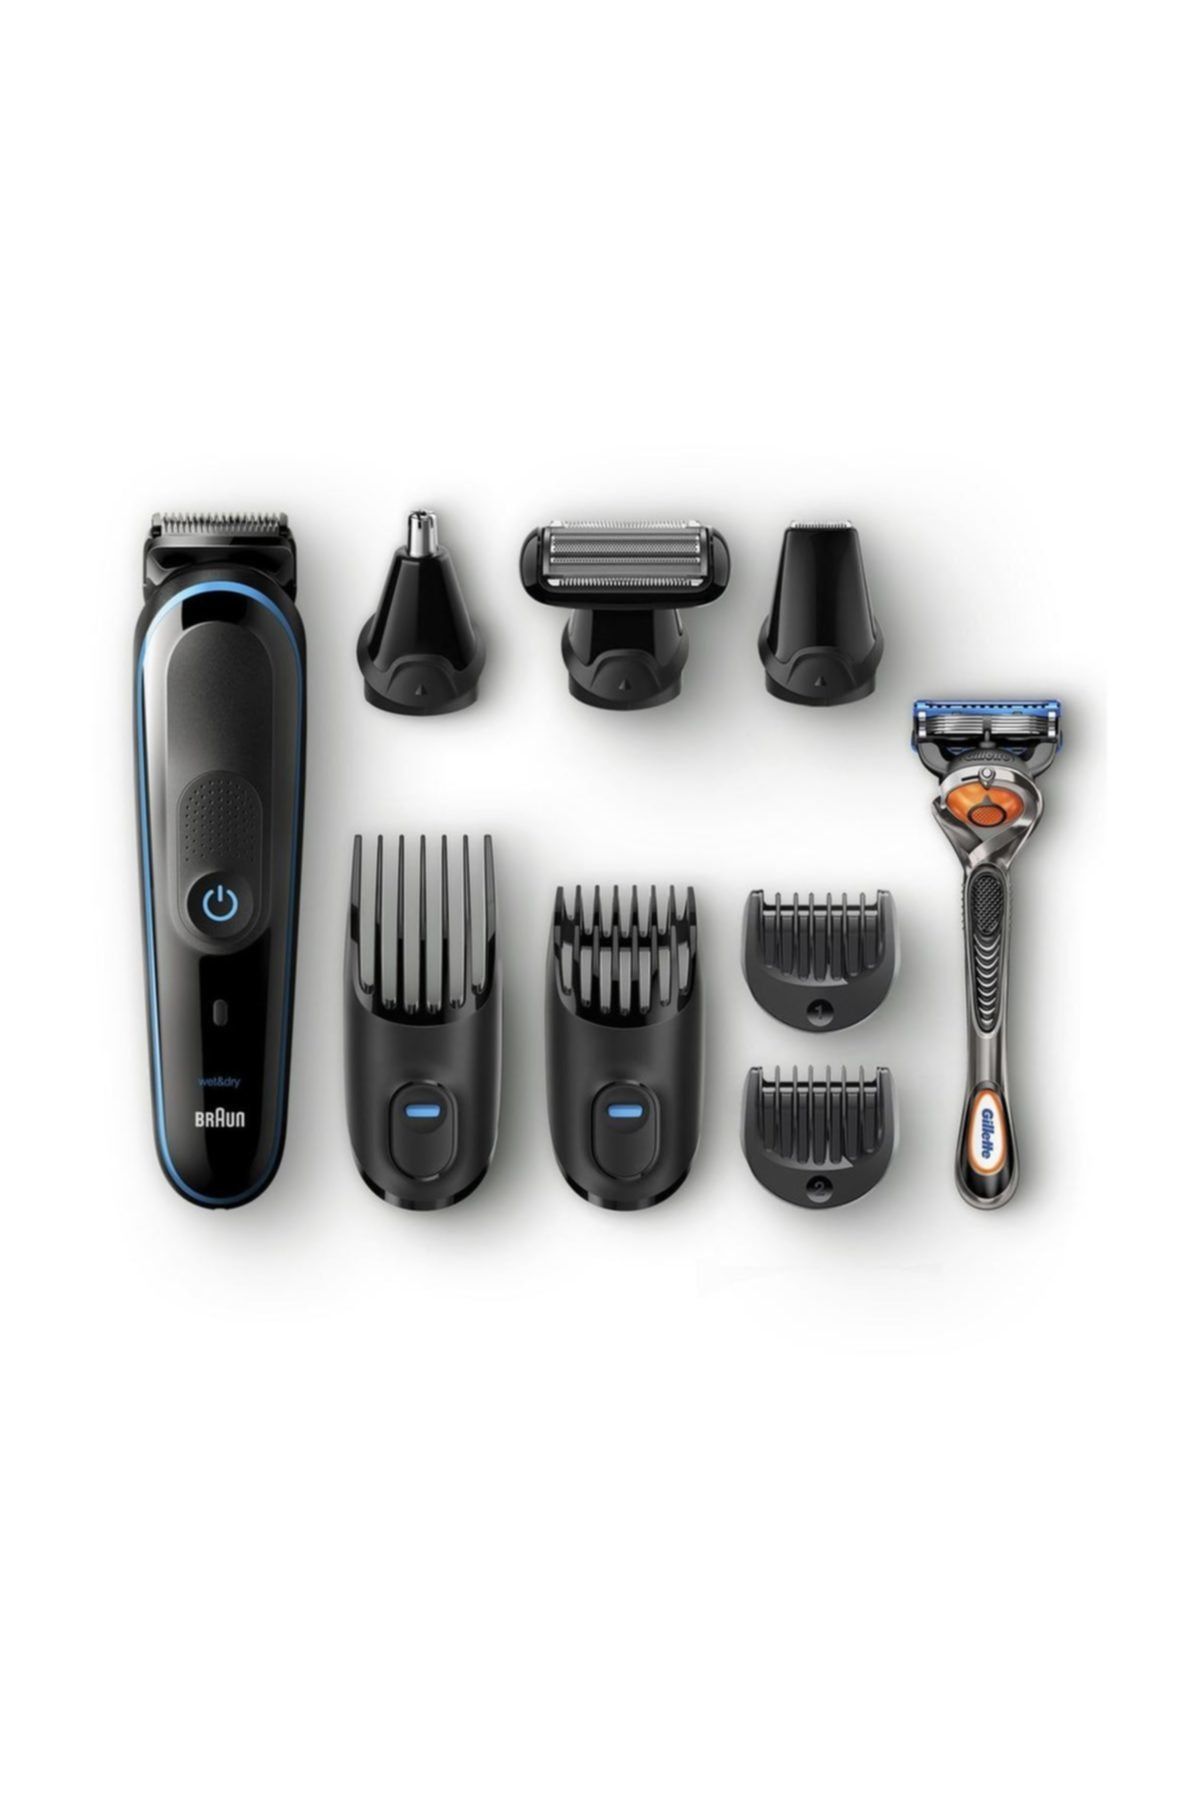 Braun Erkek Bakım Kiti Autosense Teknoloji 9in1 Şekillendirici + Gillette